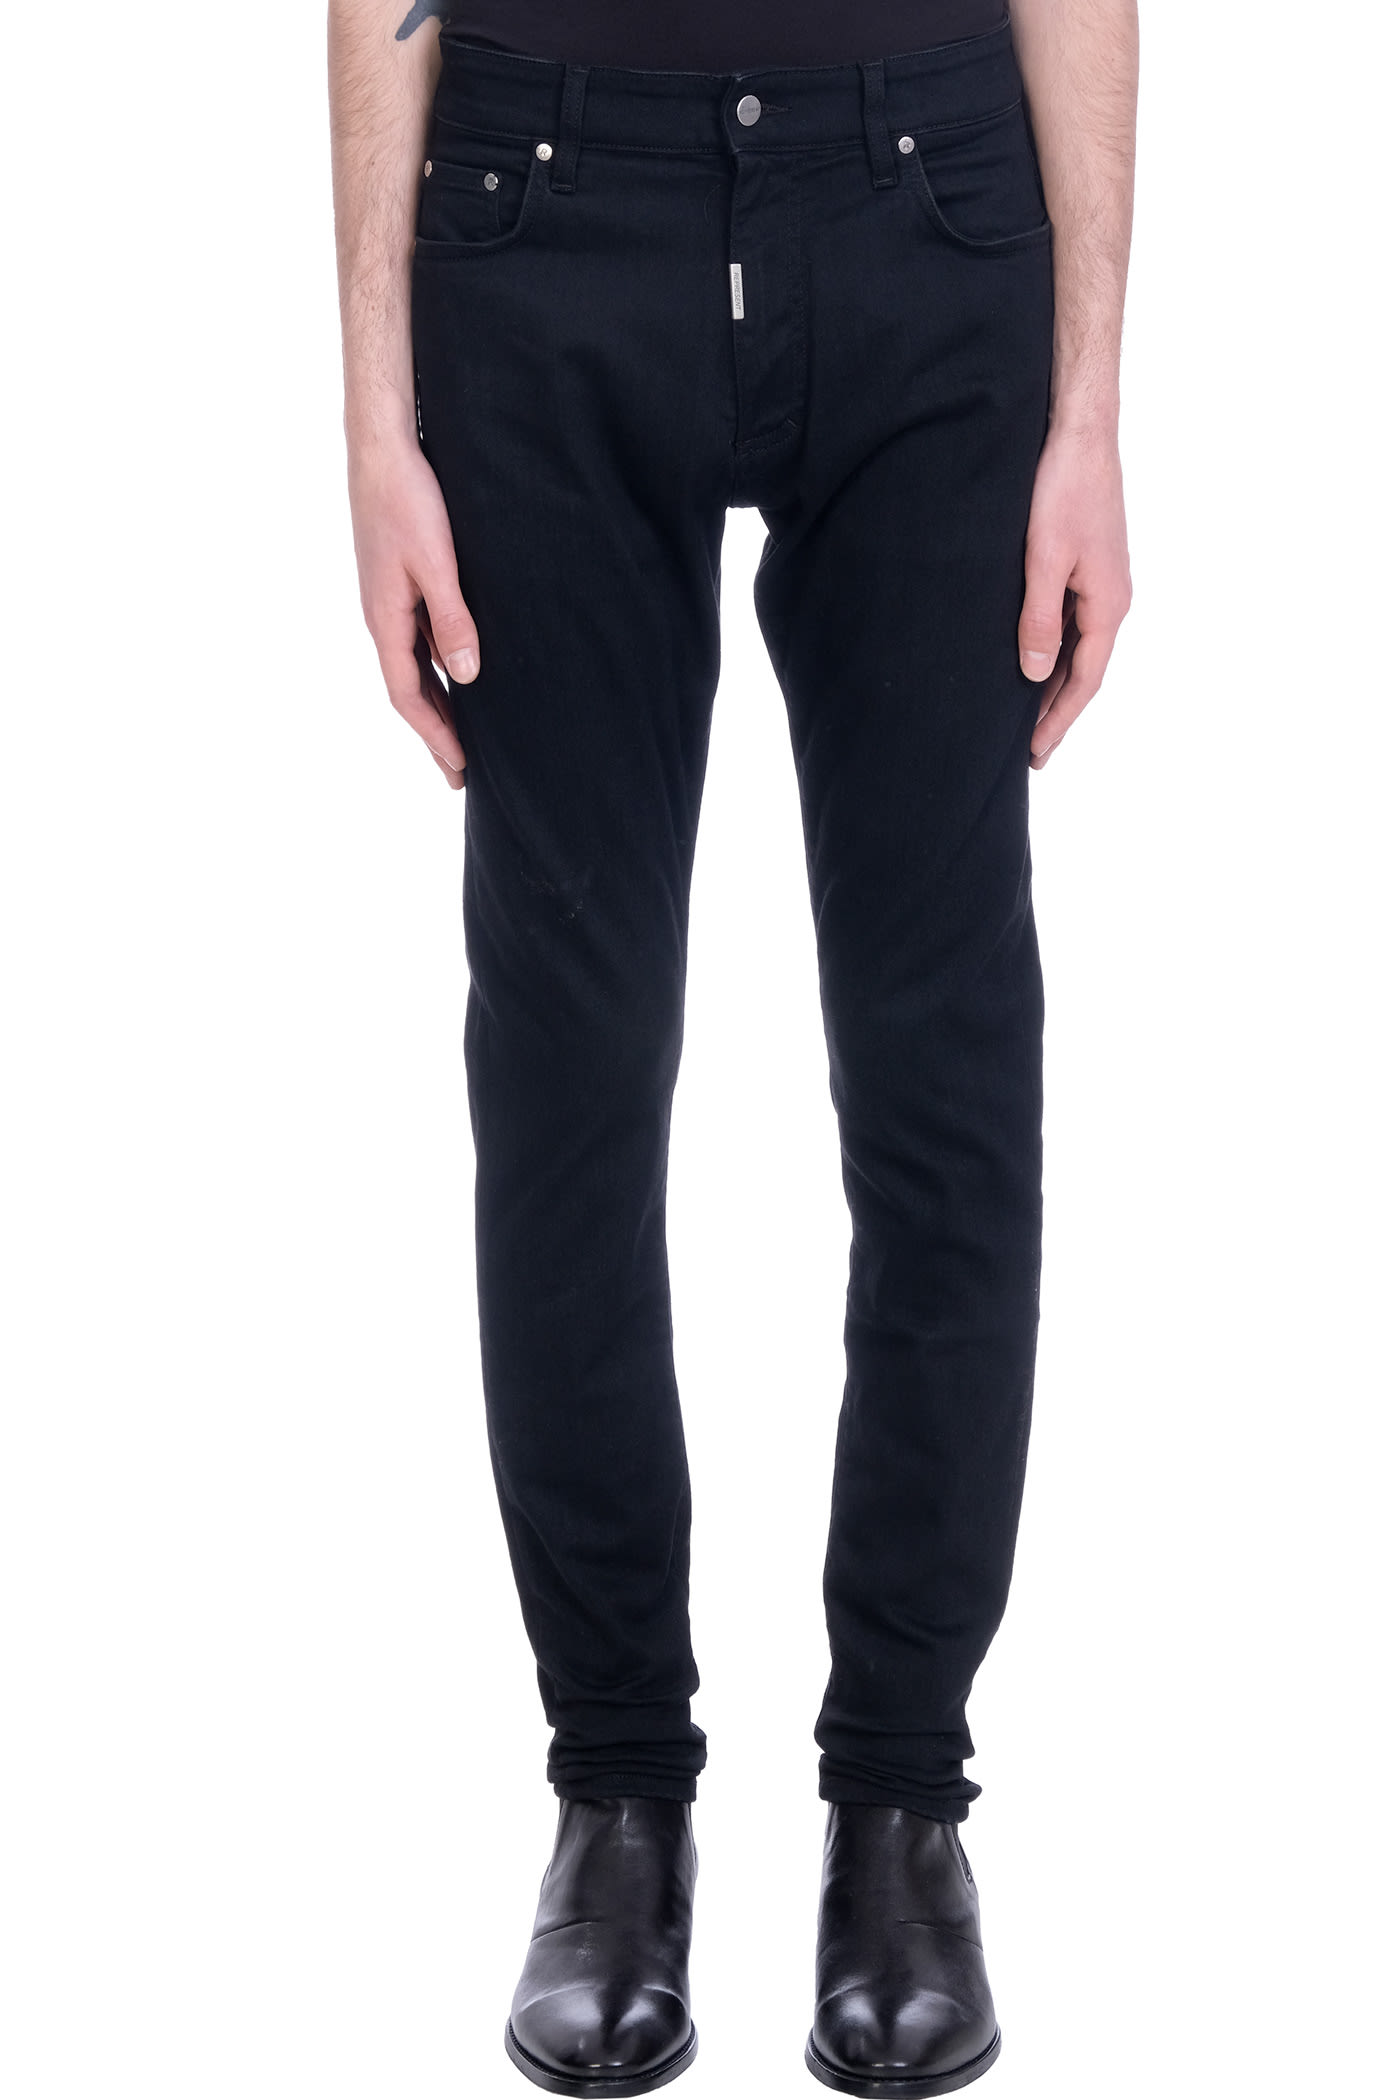 REPRESENT Essential Denim Jeans In Black Denim